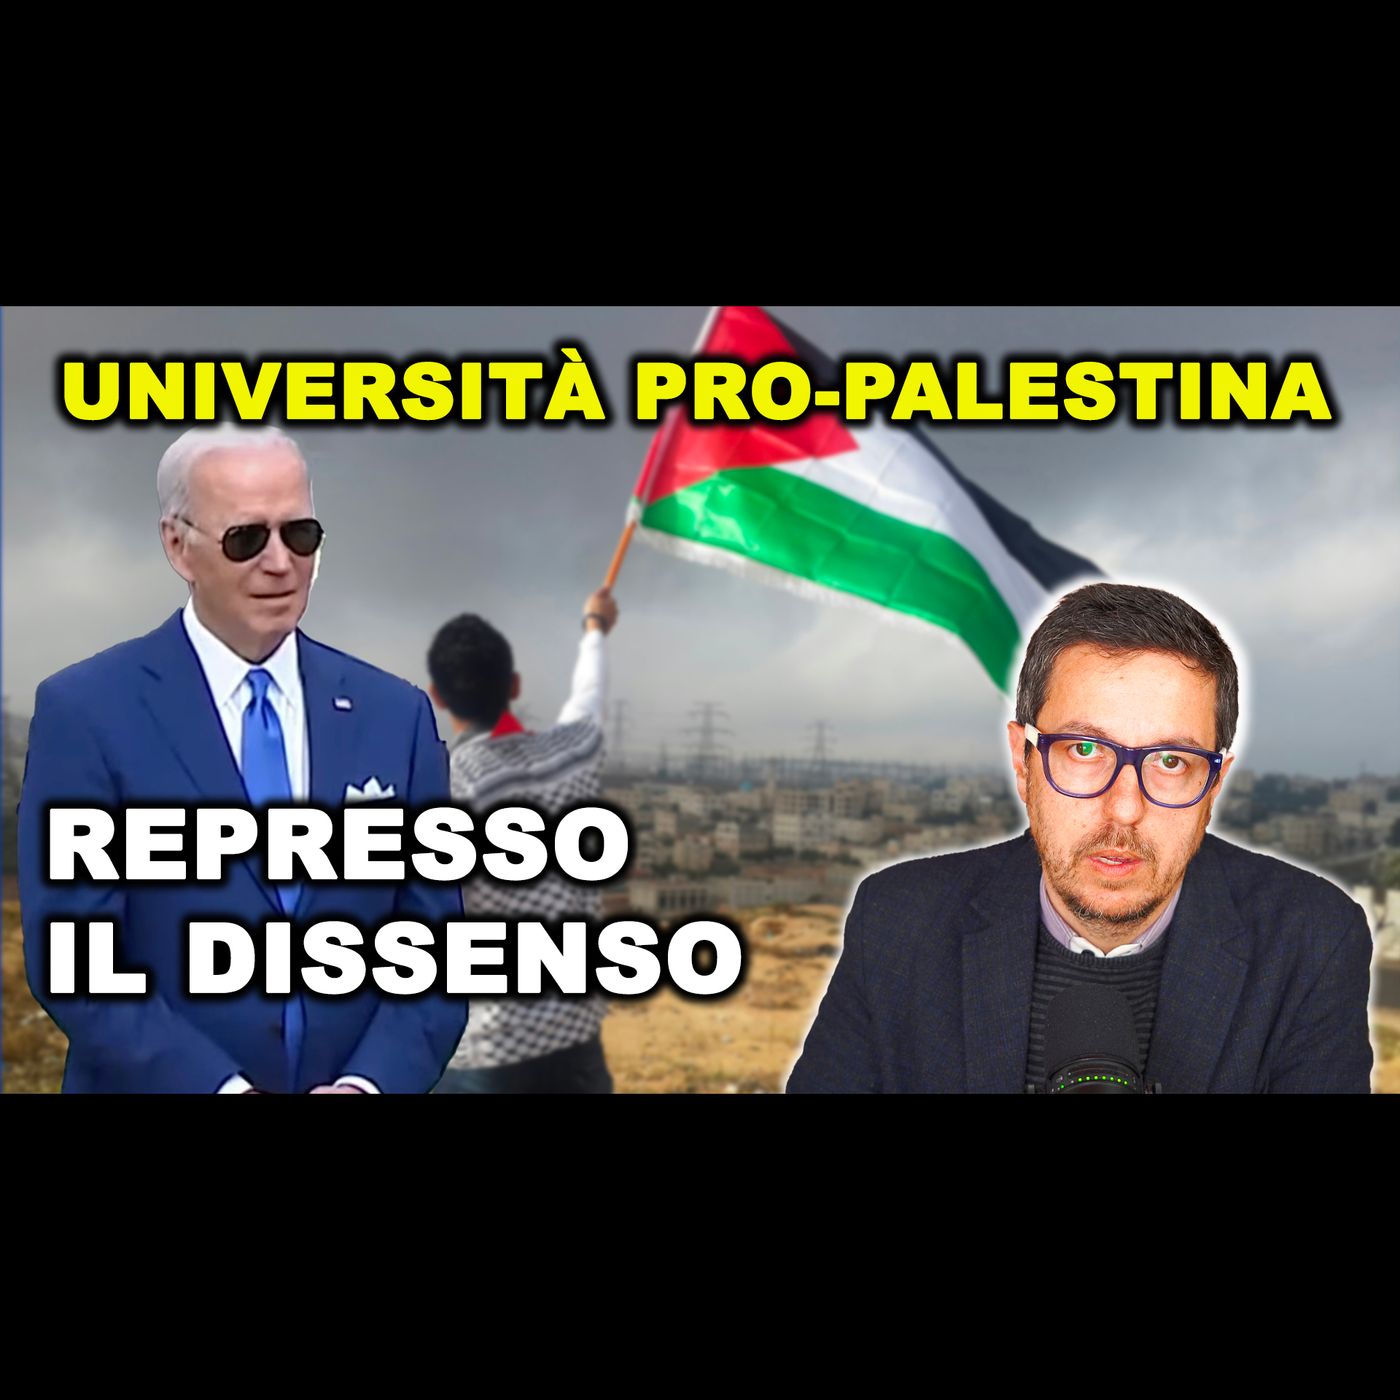 Manifestazioni FILO-PALESTINESI e PROTESTE nelle UNIVERSITÀ USA e del mondo | Il Dissenso non piace